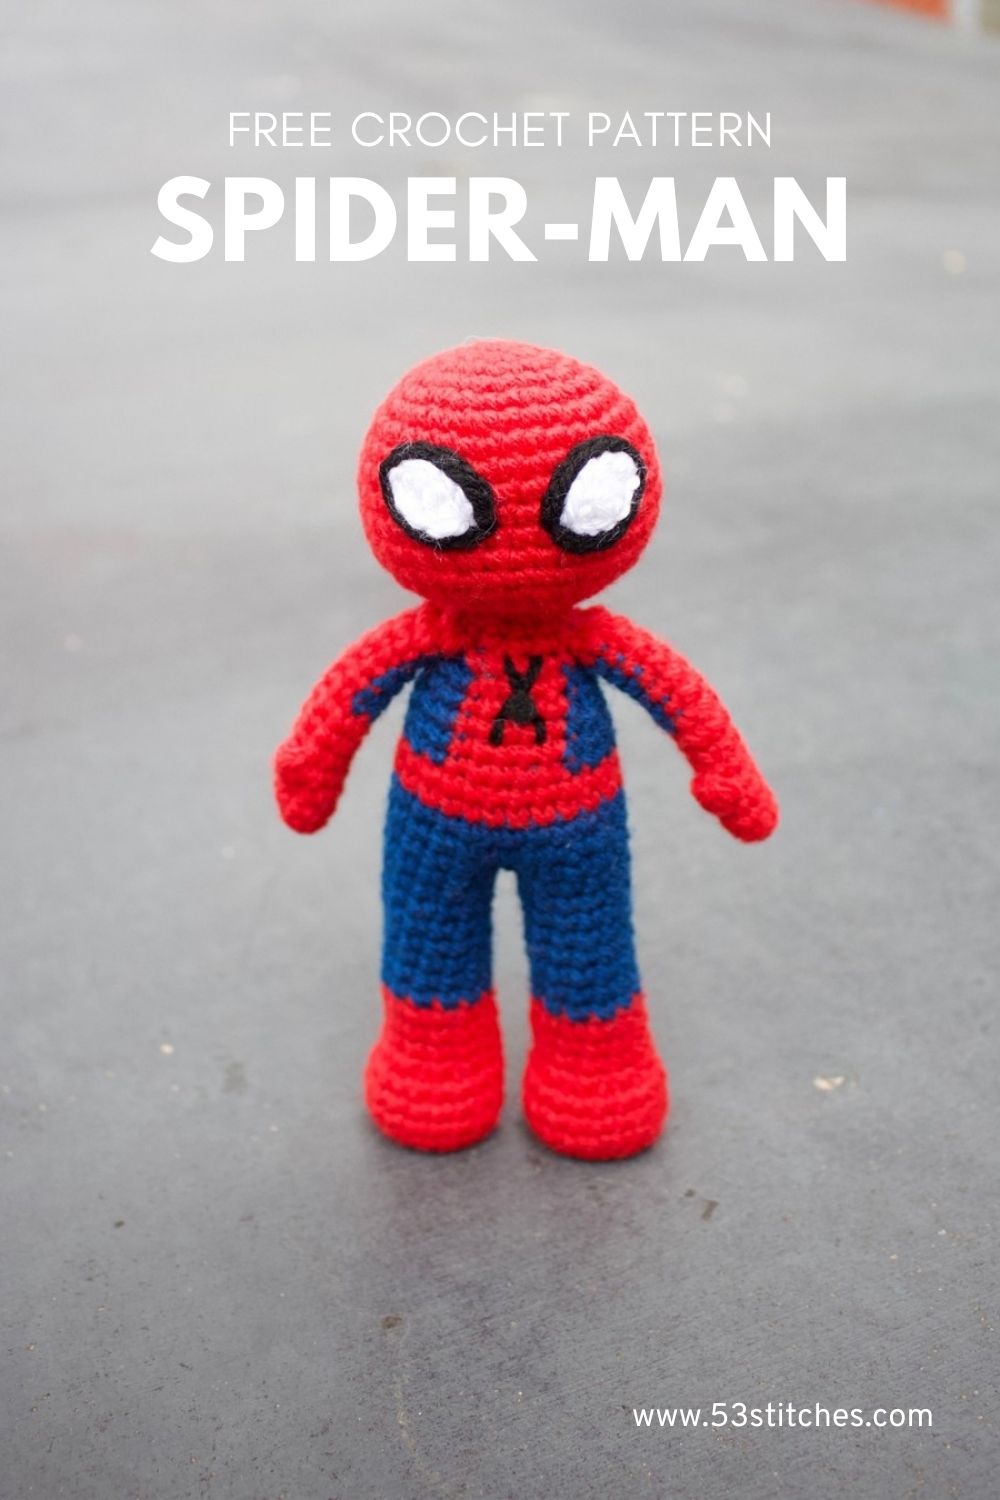 Spiderman crochet pattern